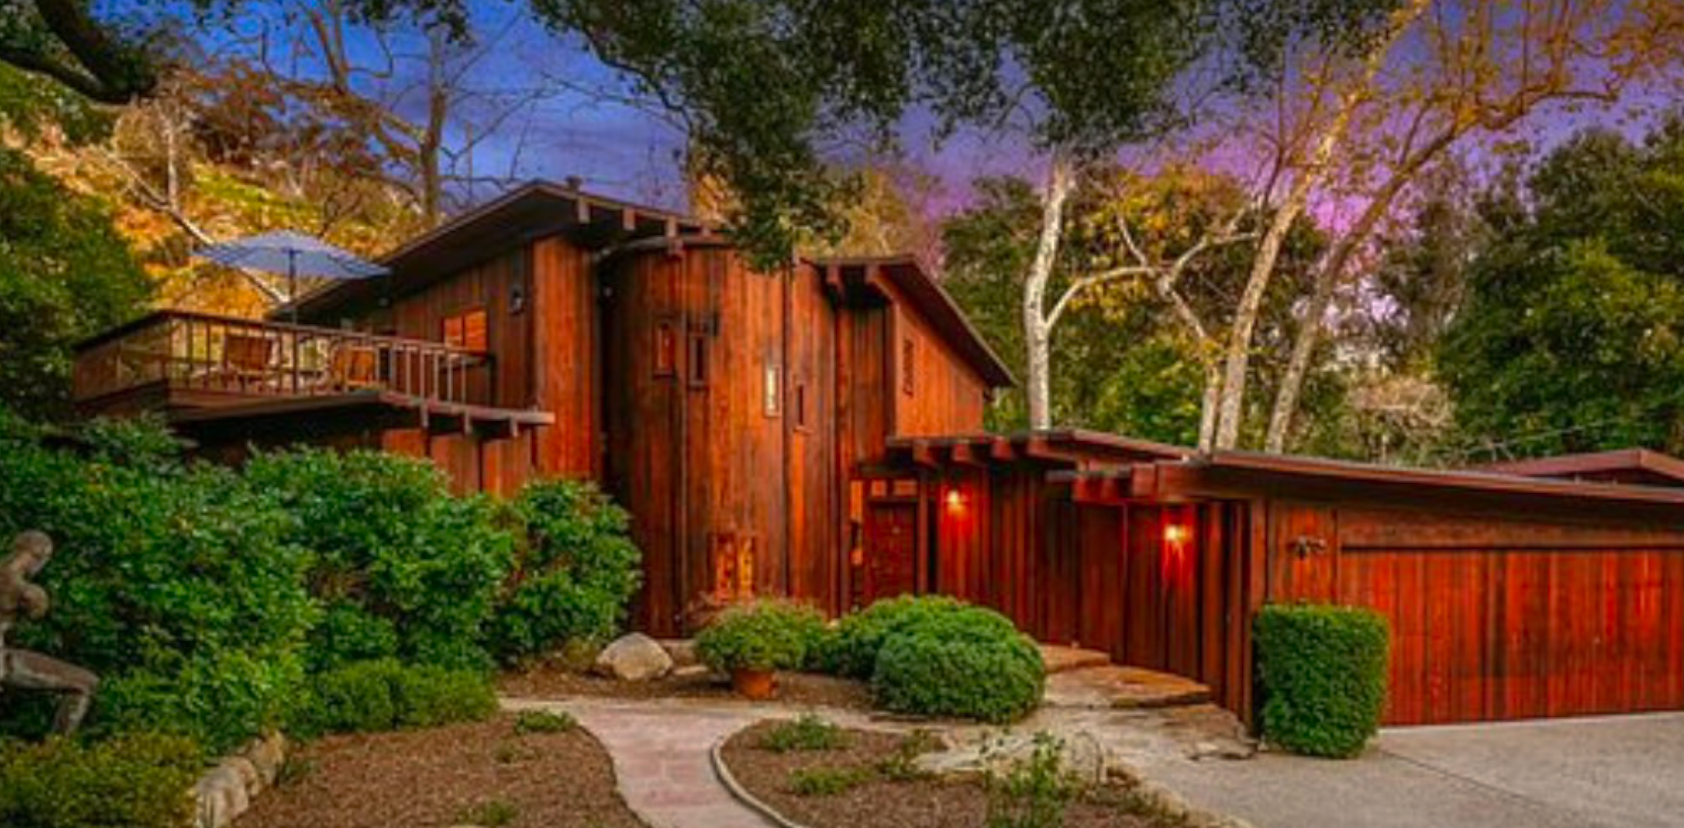 Joyce DeWitt's home exterior view in Santa Barbara, California | Source: YouTube/DrGariS